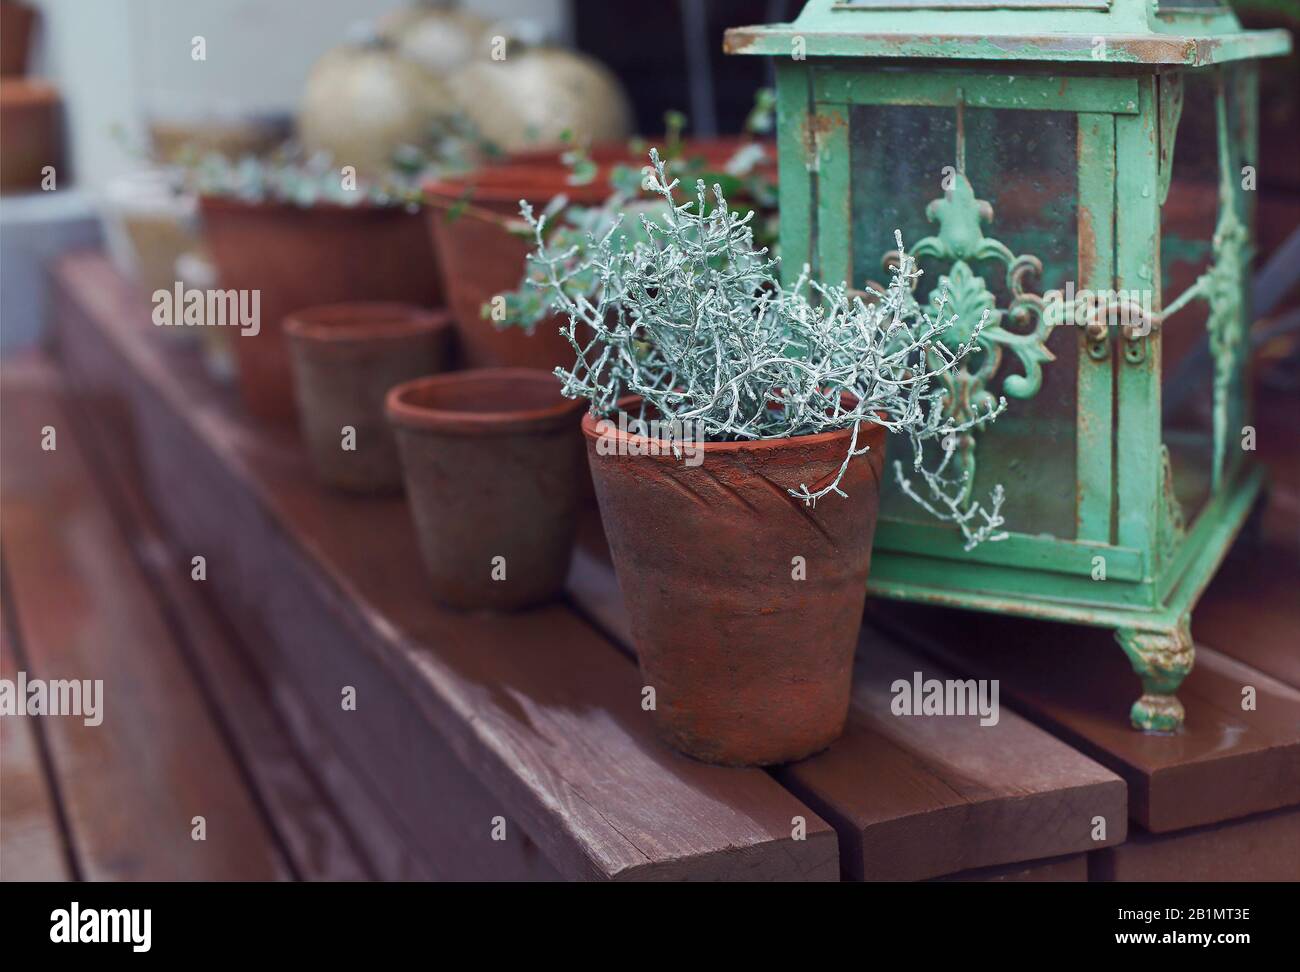 Schöne grüne Pflanze mit dünnen Stielen in Lehmblütenkanne neben anderen Töpfen und alter schäbiger Laterne auf braunen Holztreppen im Garten an sonnigen Tagen Stockfoto